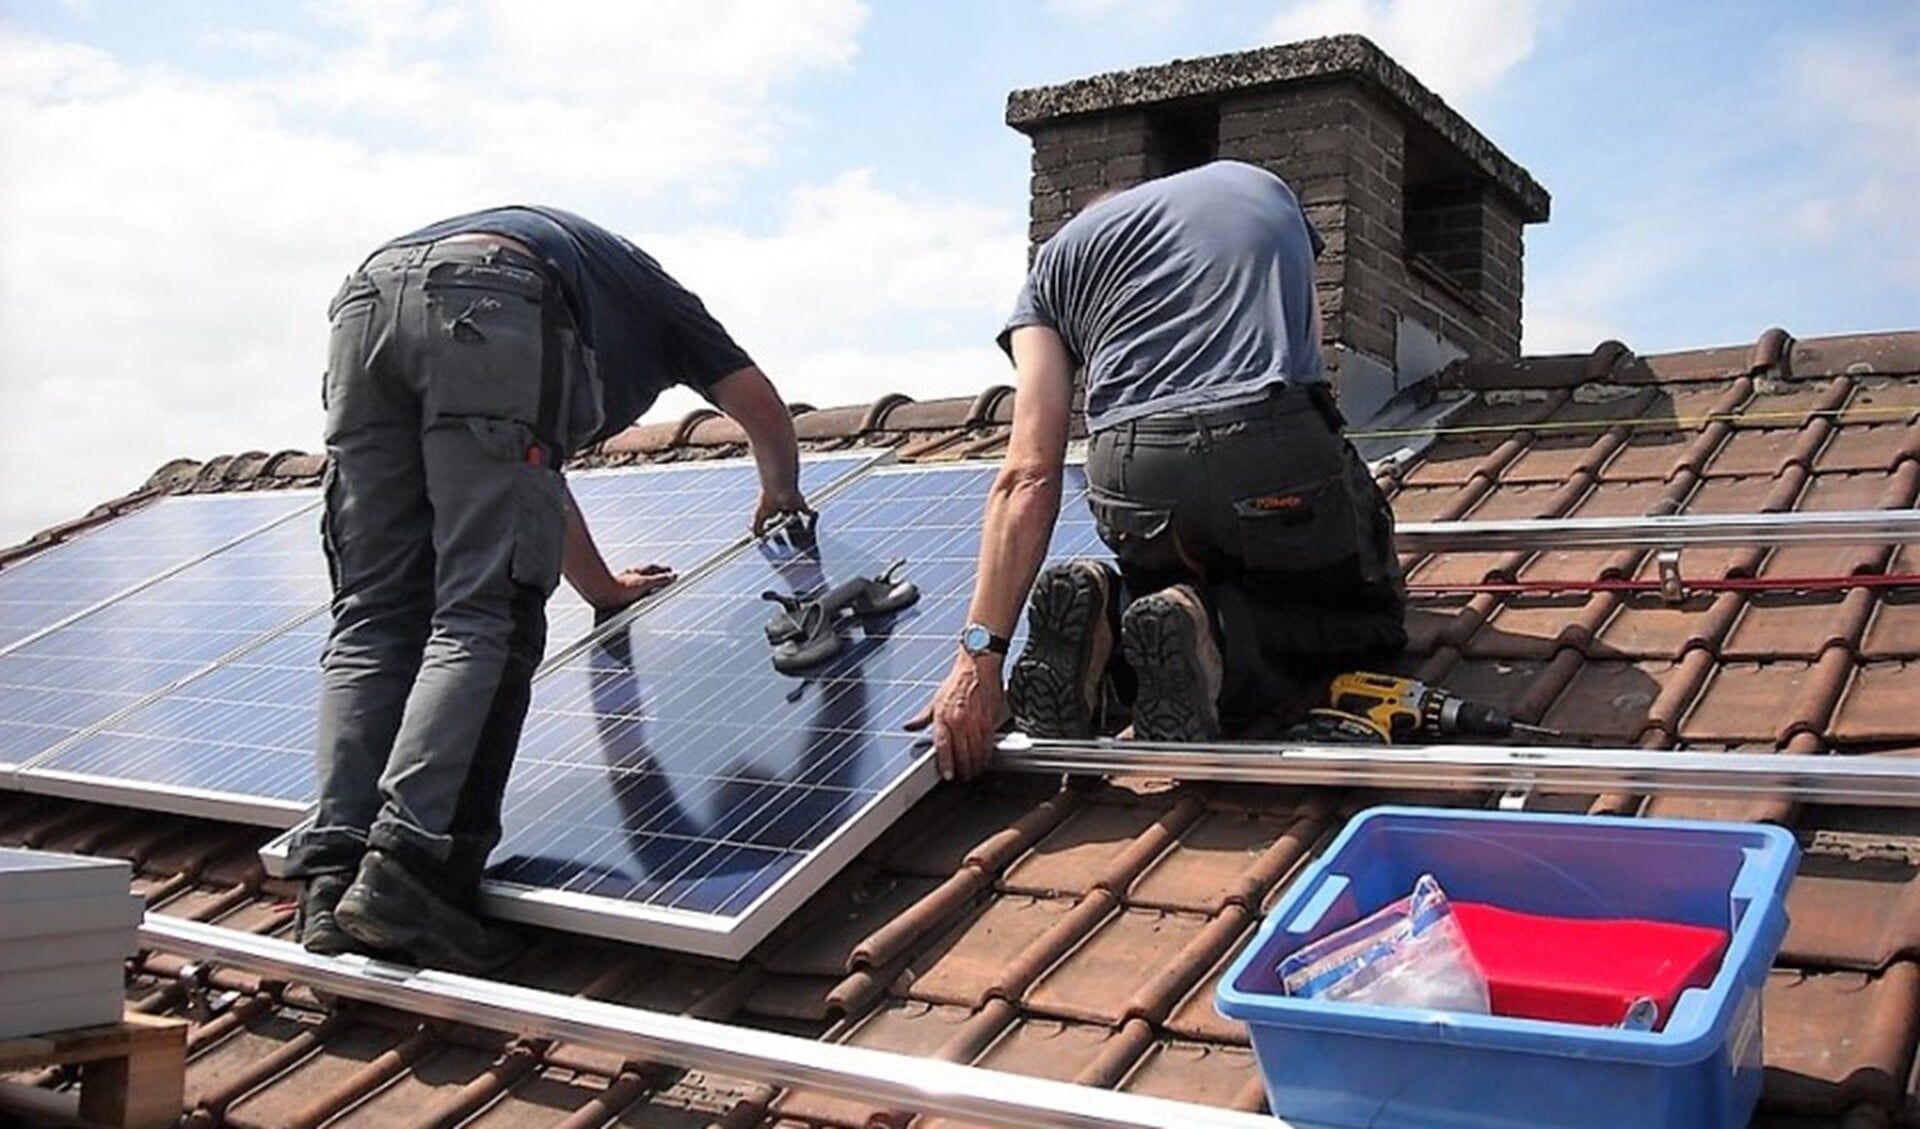 Het plaatsen van zonnepanelen is momenteel een van de populairste manieren van energiebesparing (archieffoto).